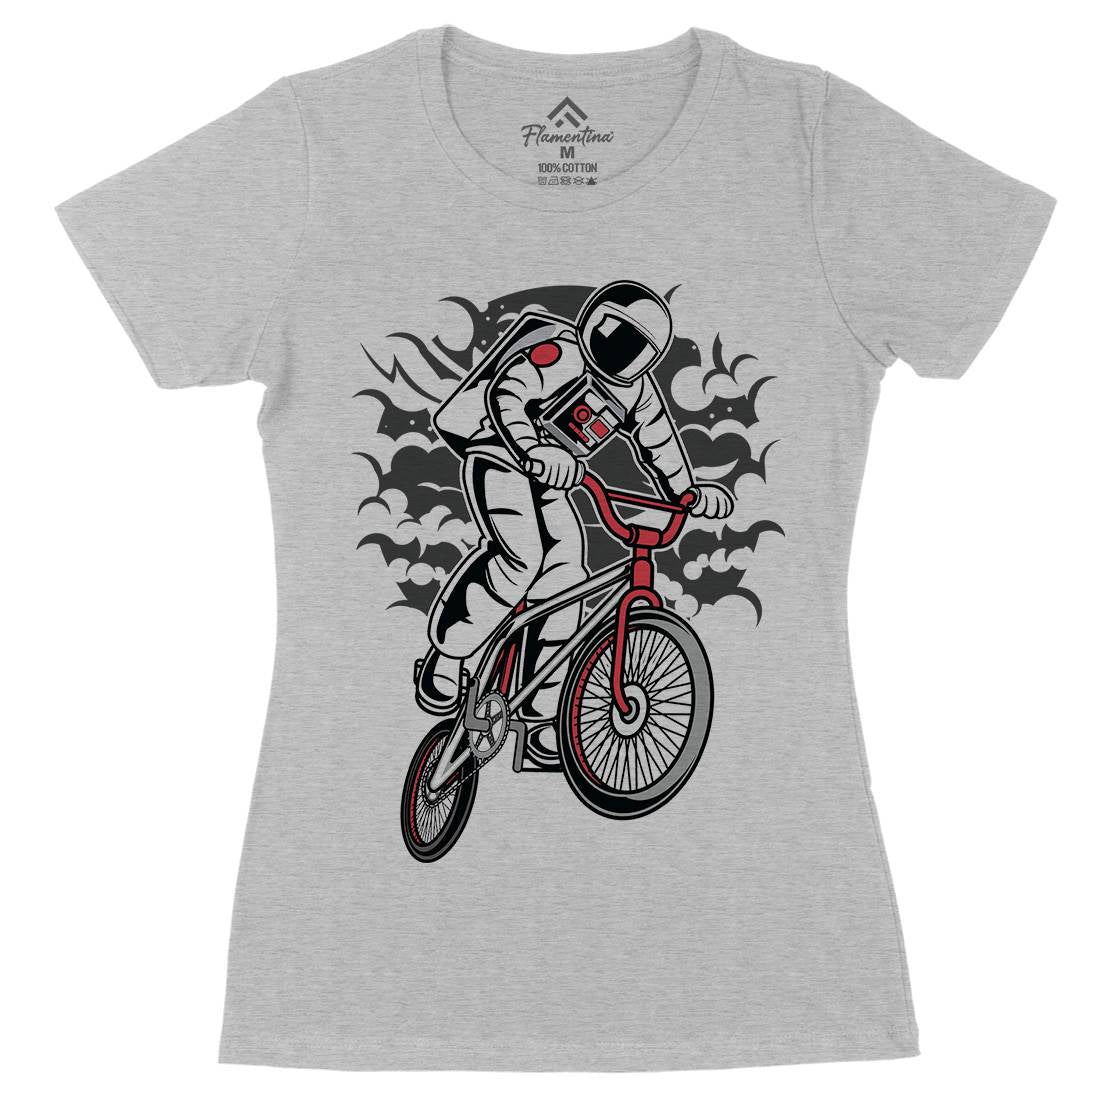 Astronaut Bike Womens Organic Crew Neck T-Shirt Space C308